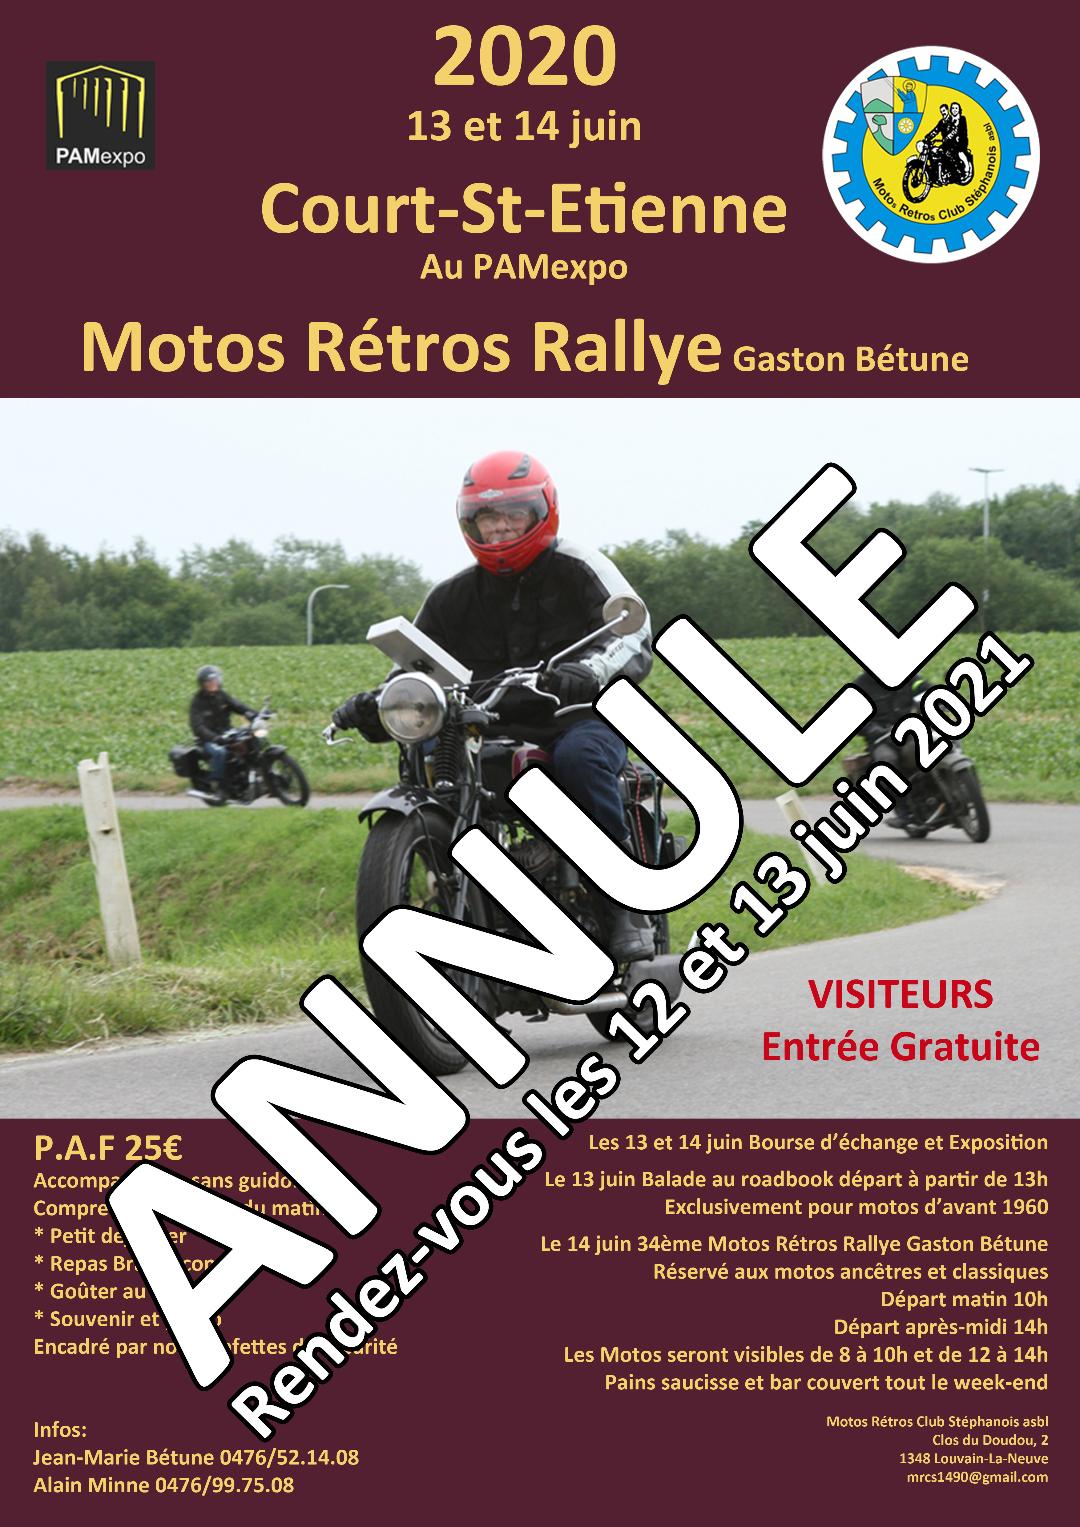 Affiche du "Motos Rétros Rallye Gaston Béthune" surchargée de la mention "Annulé, rendez-vous les 12 et 13 juin 2021